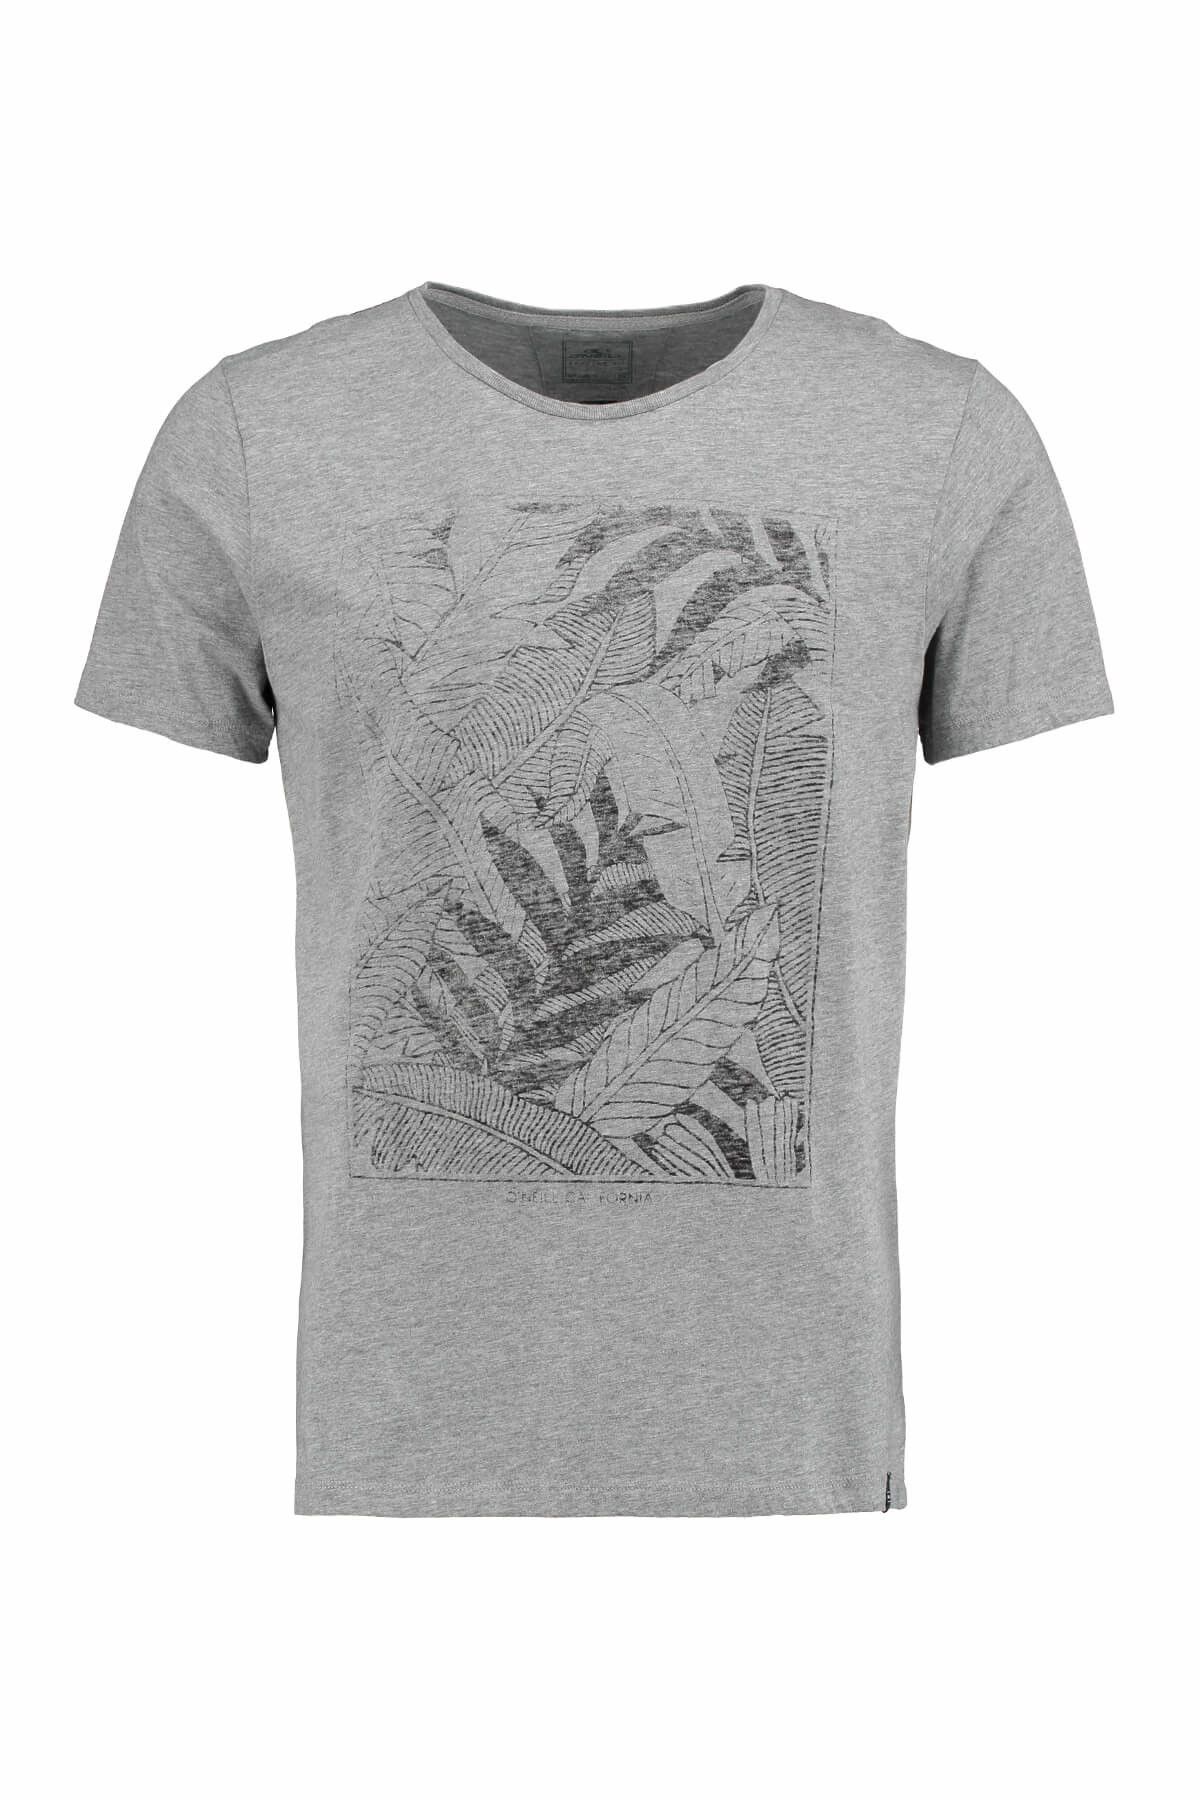 O'Neill Erkek T-Shirt - Palms Erkek Bisiklet Yaka Baskılı Gri Tişört - 602342-8001